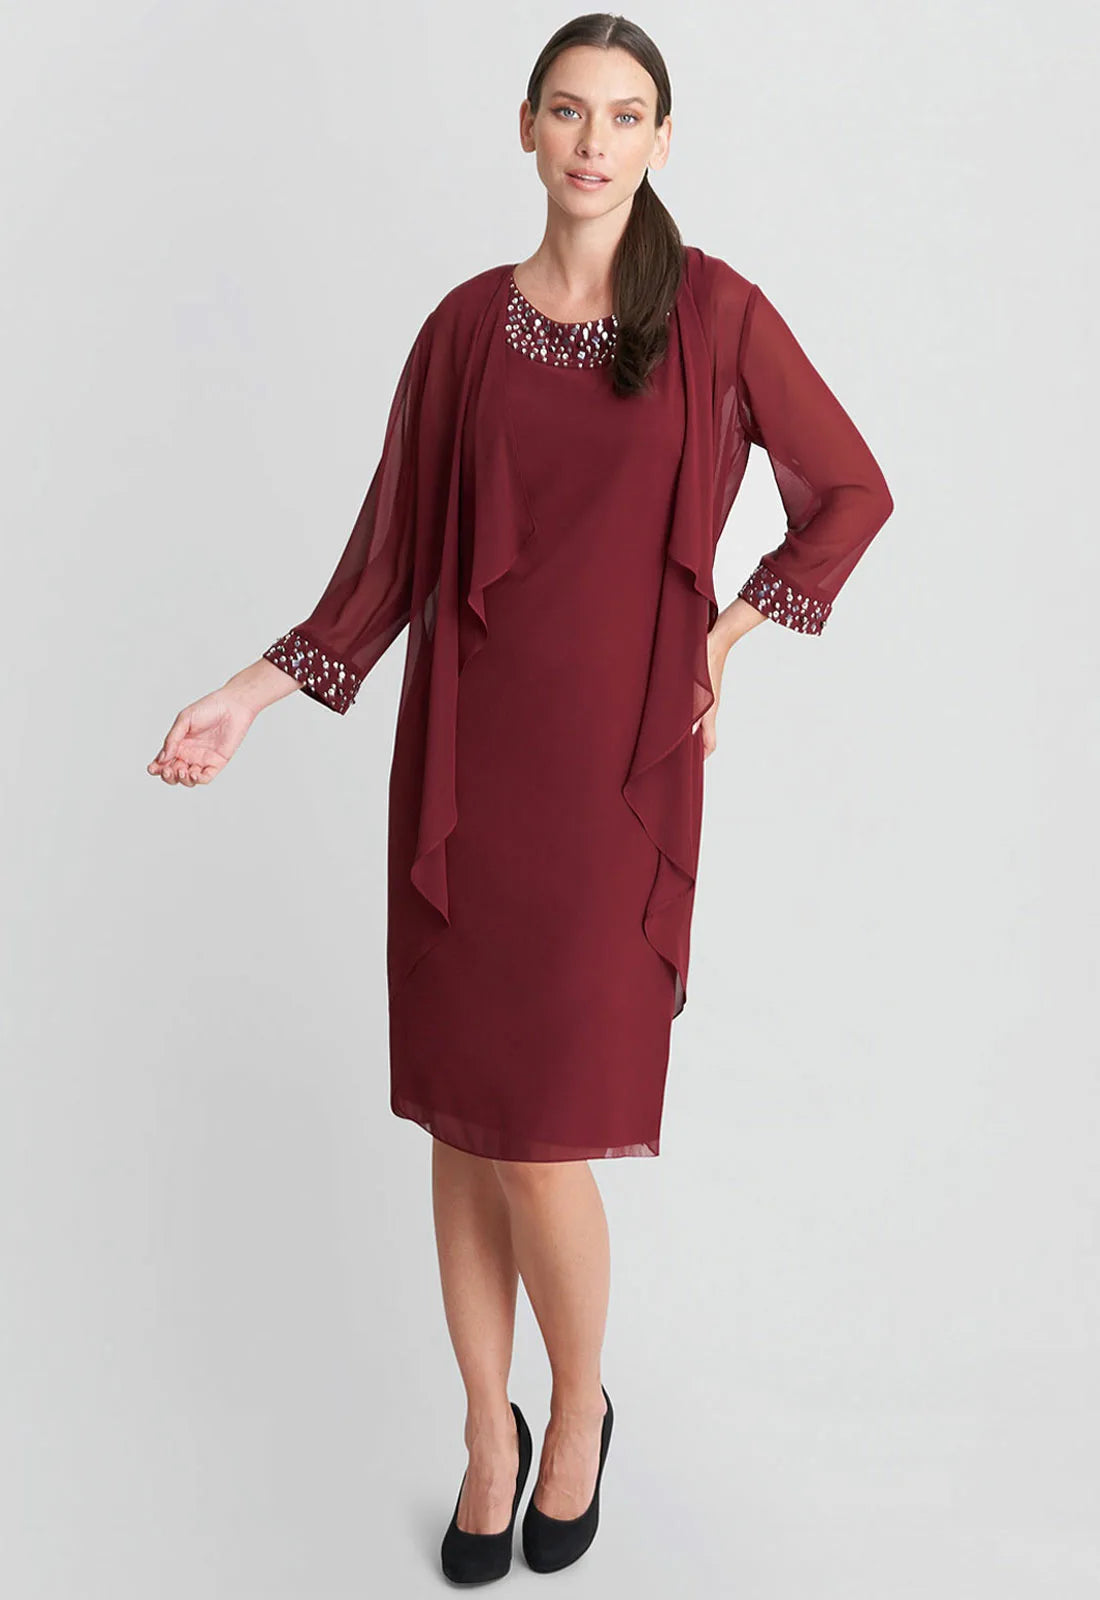 Gina Bacconi Cranberry Dress and Jacket